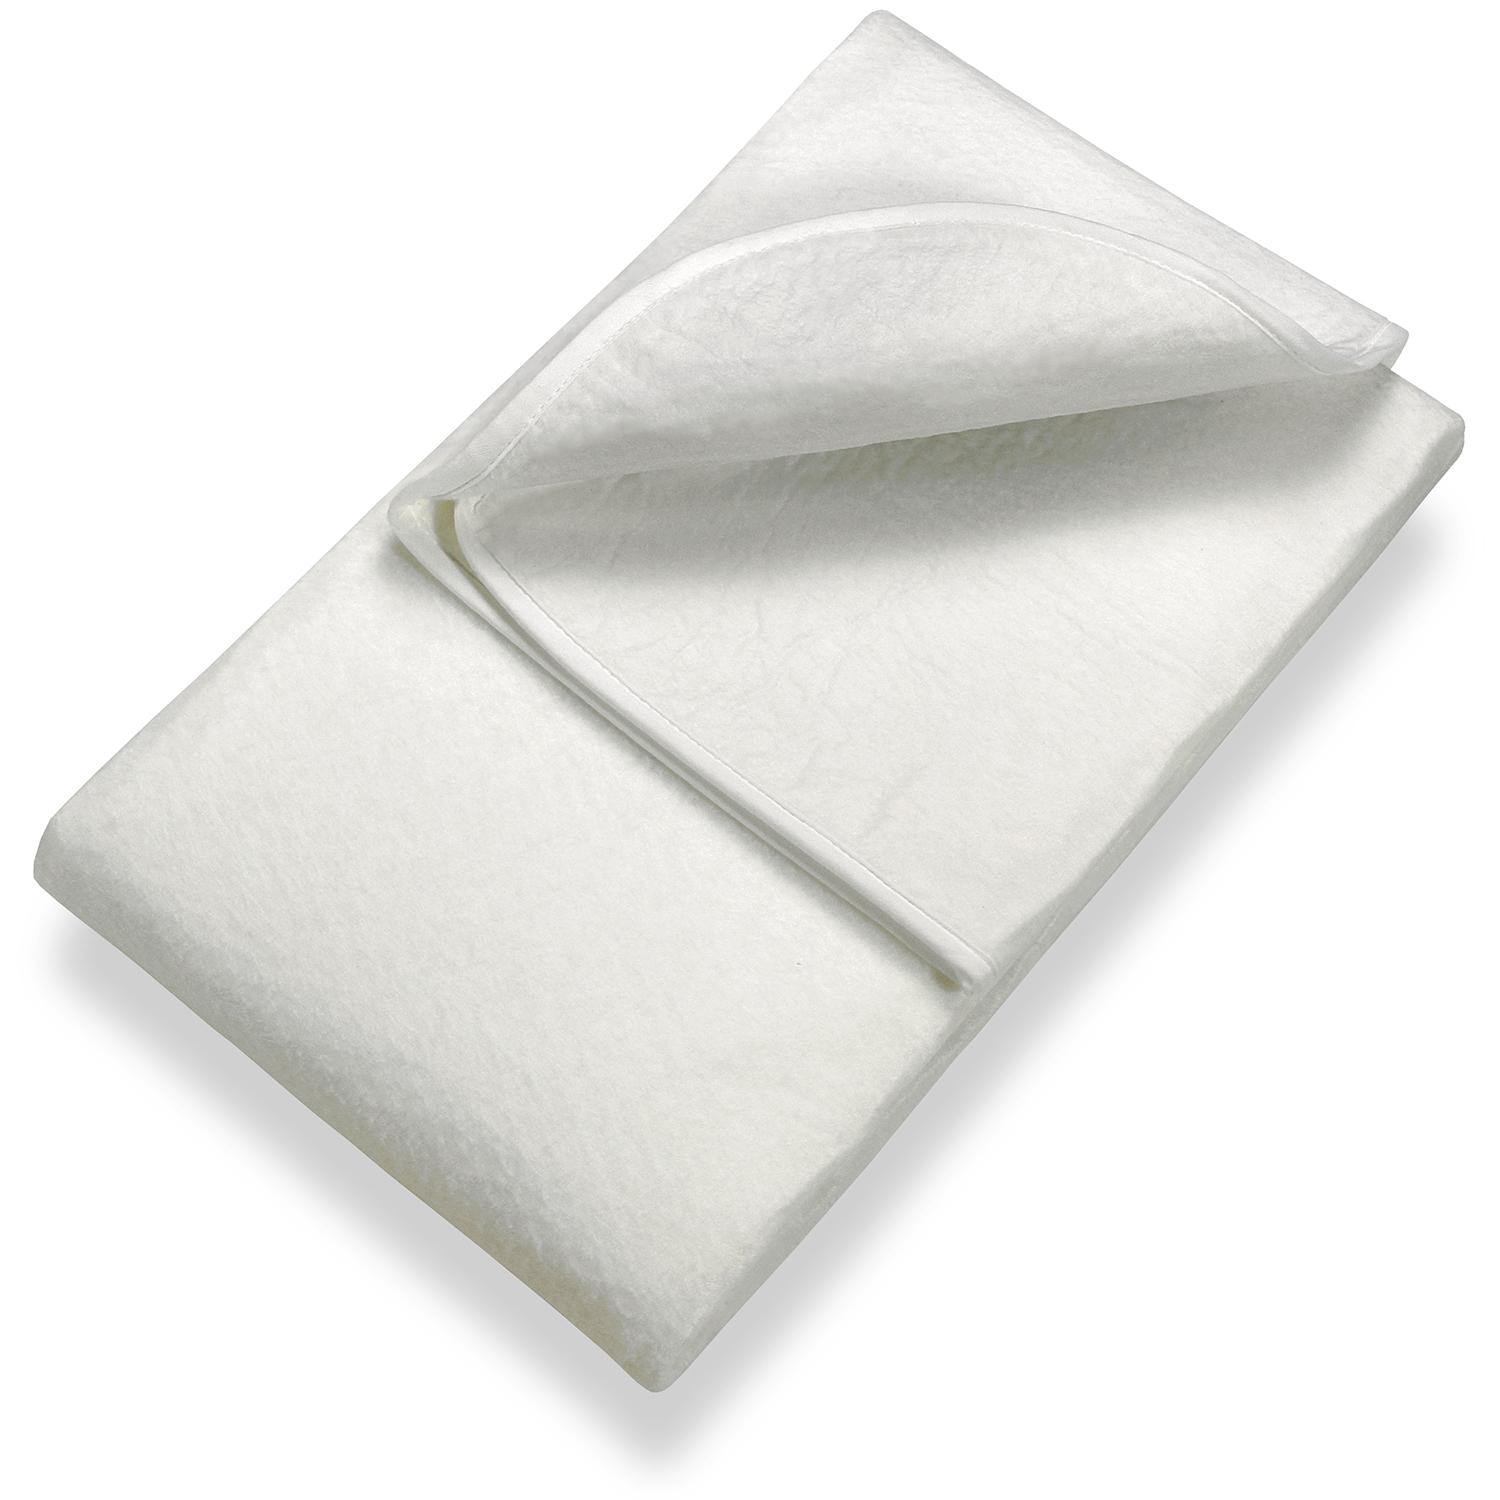 Sleezzz Basic, protège-matelas en feutre aiguilleté 100 x 200 cm, à poser sur le sommier, blanc